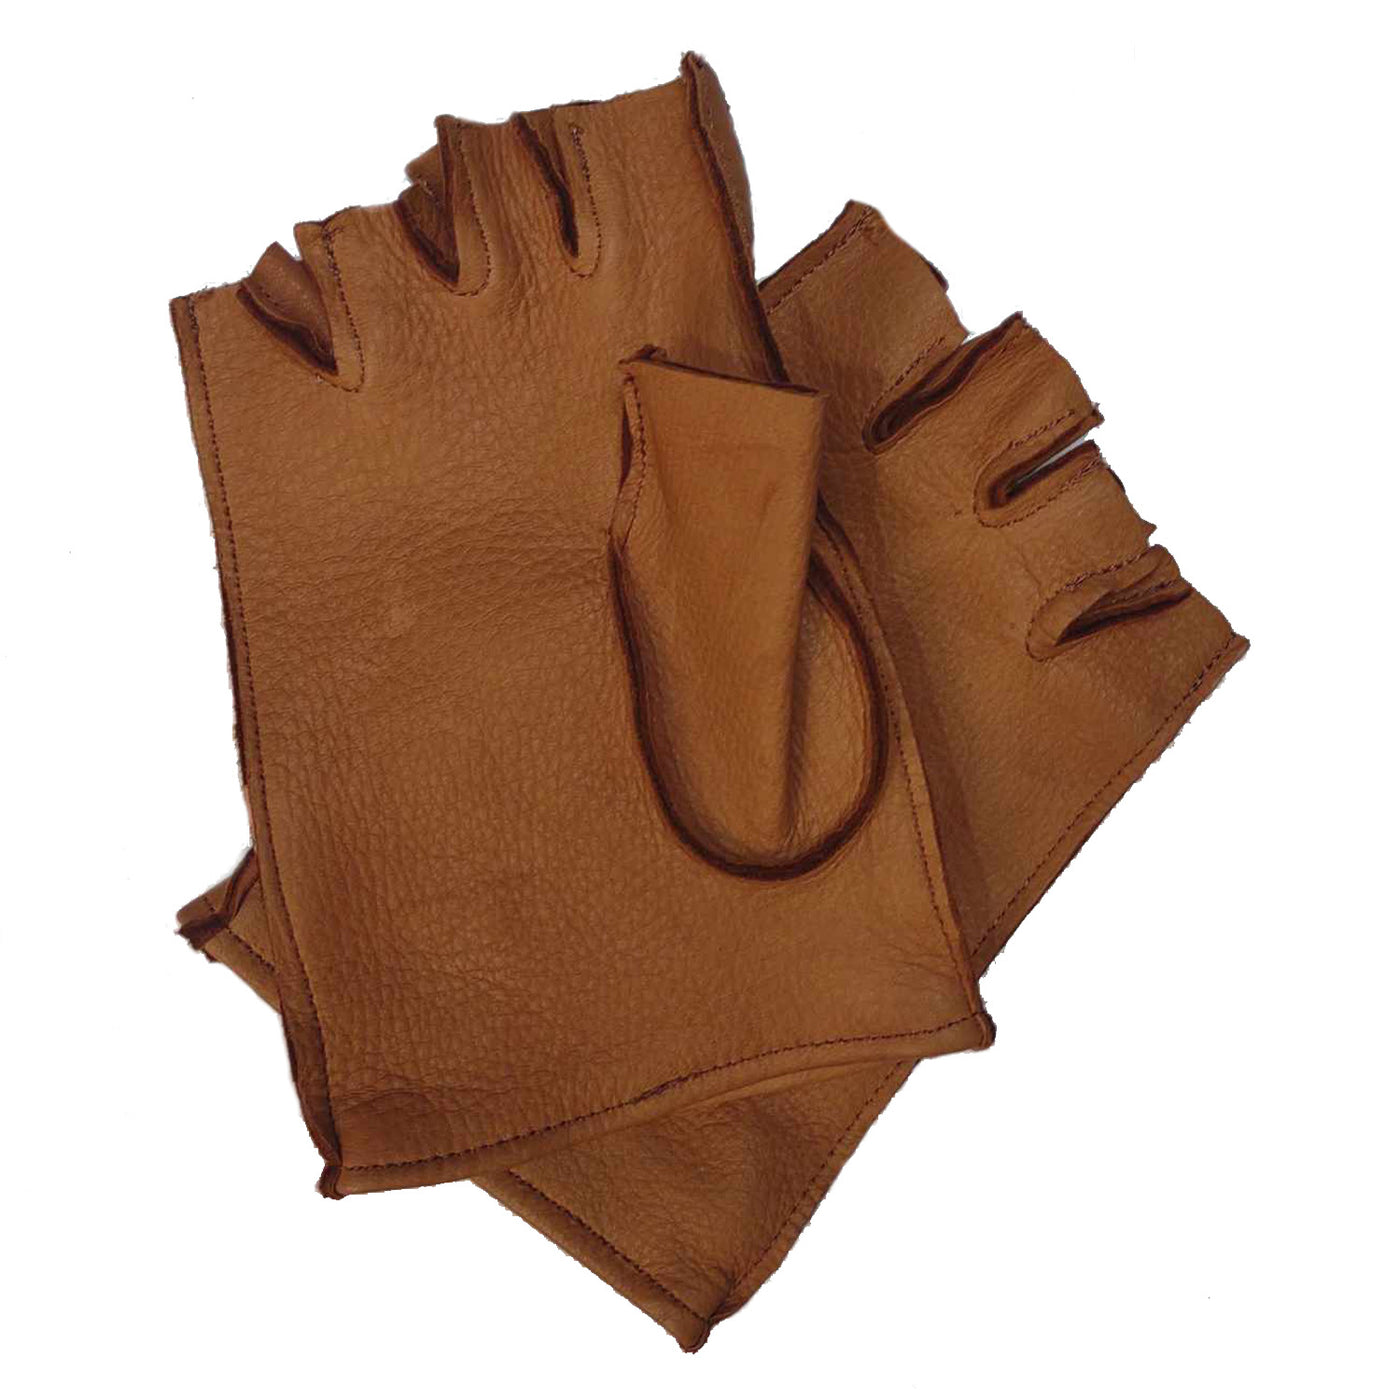 Fingerless gloves - Deer leather